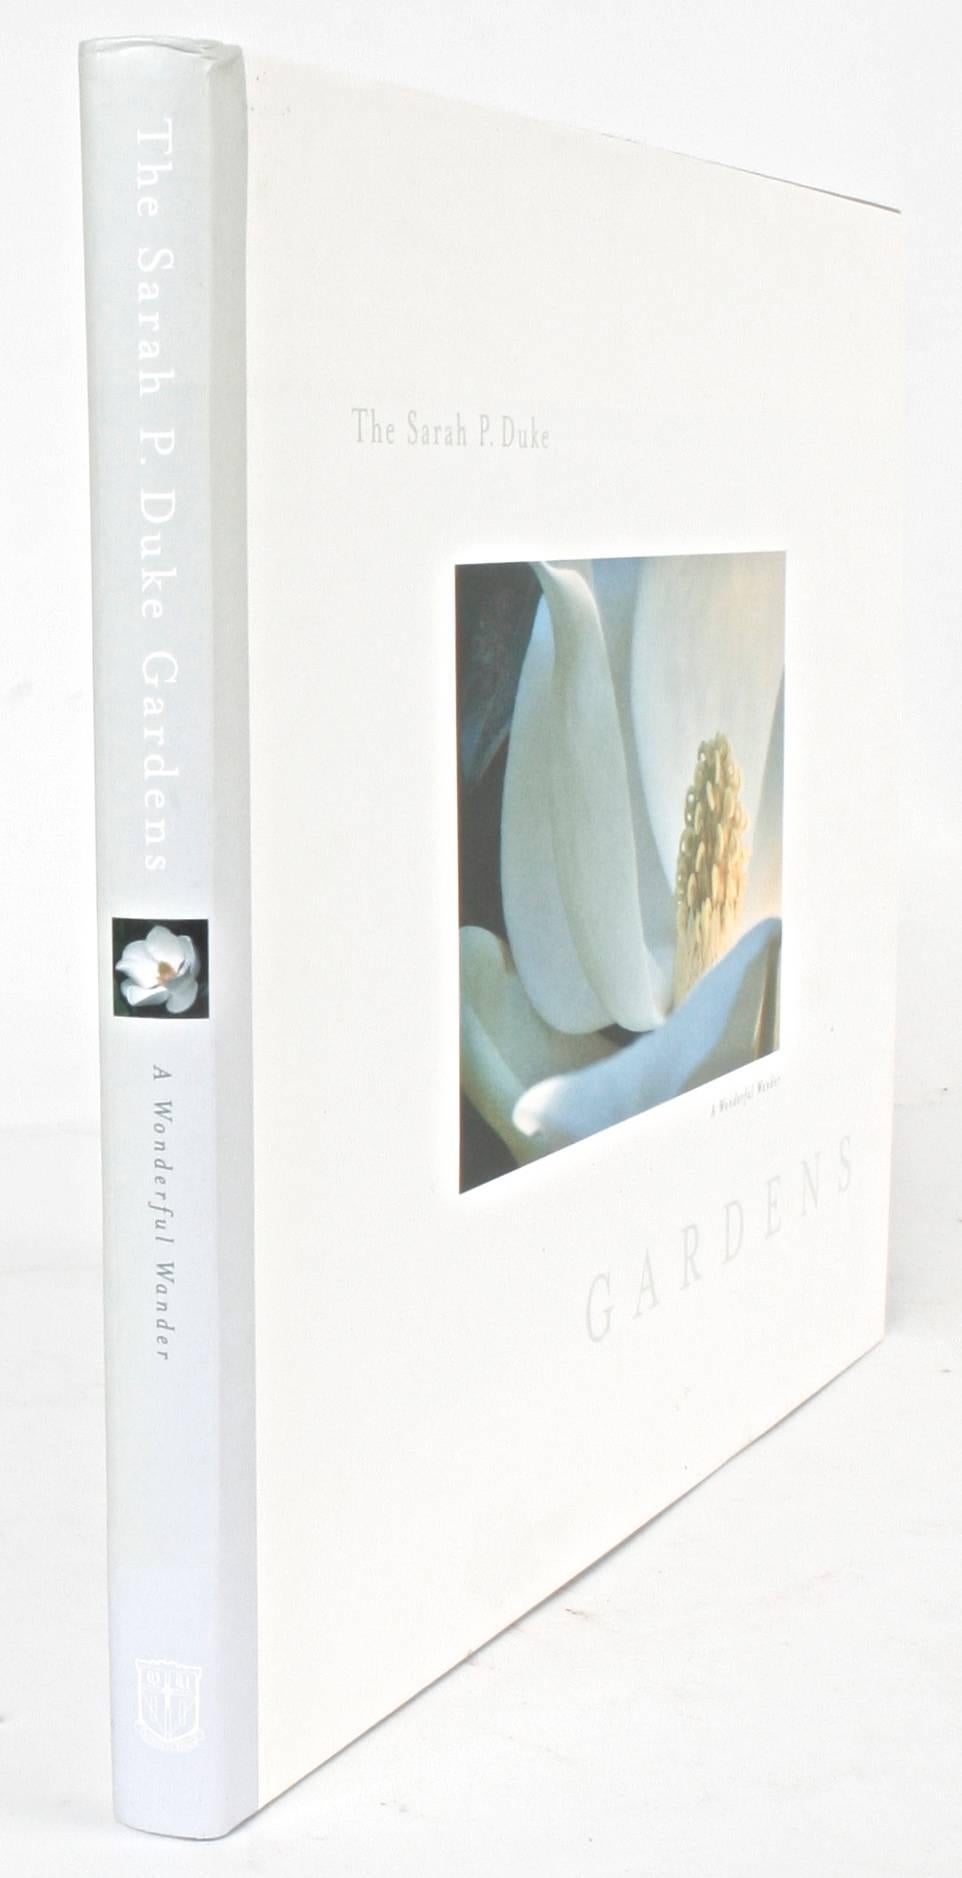 « The Sarah P. Duke Gardens, A Wonderful Wander » (Un voyage merveilleux), première édition en vente 10